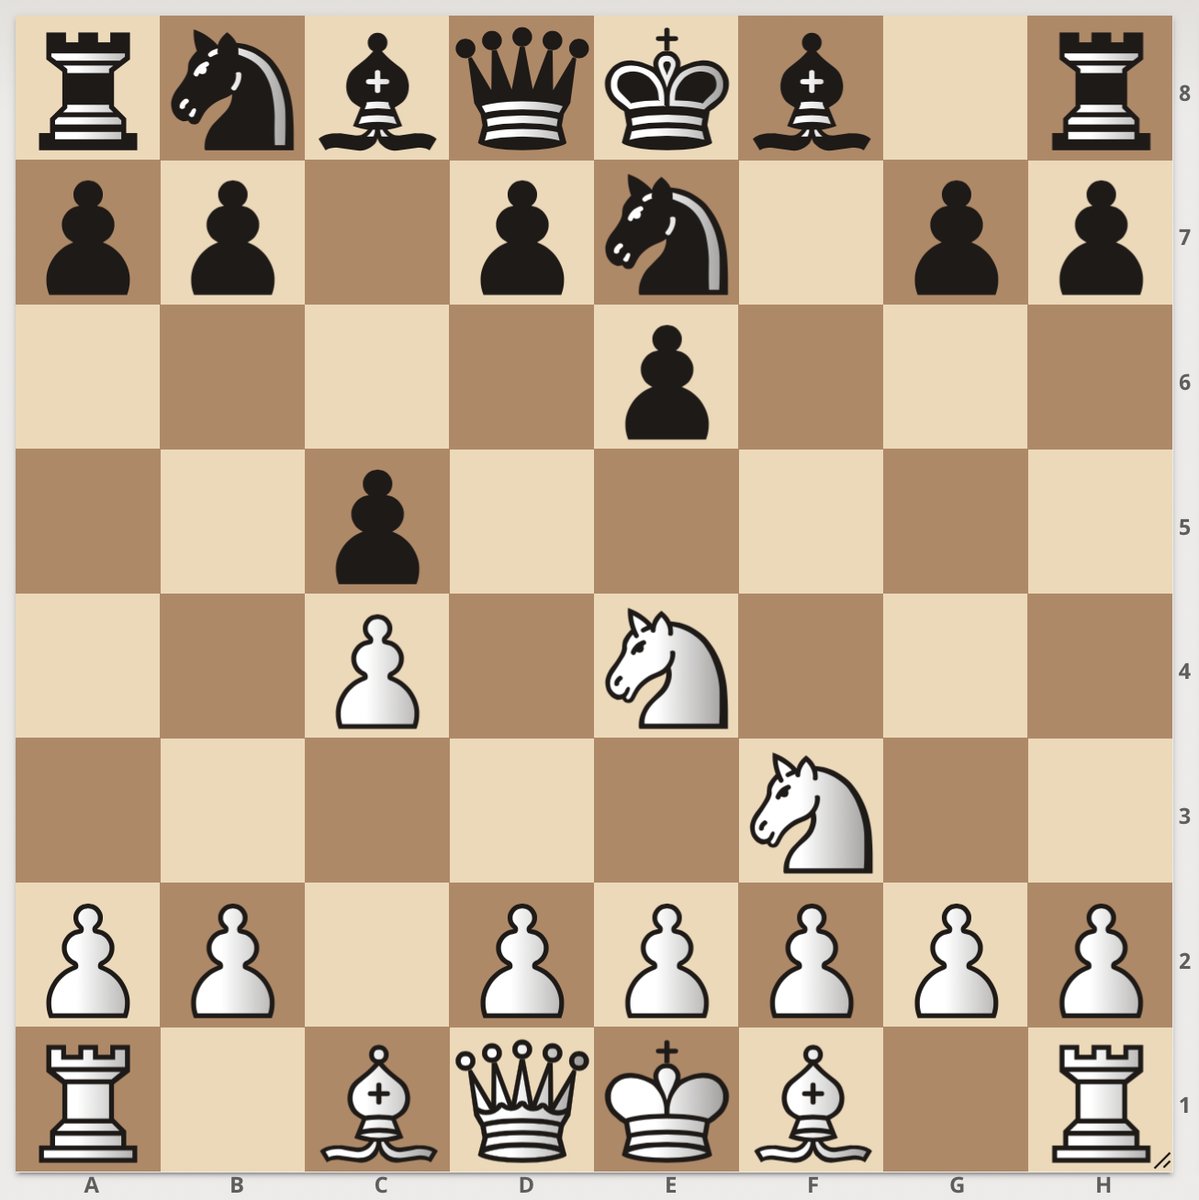 Скандинавская защита за черных. Лучшие начало за белых. Сименс движок шахмат. 5 Лучшие начала за белых.